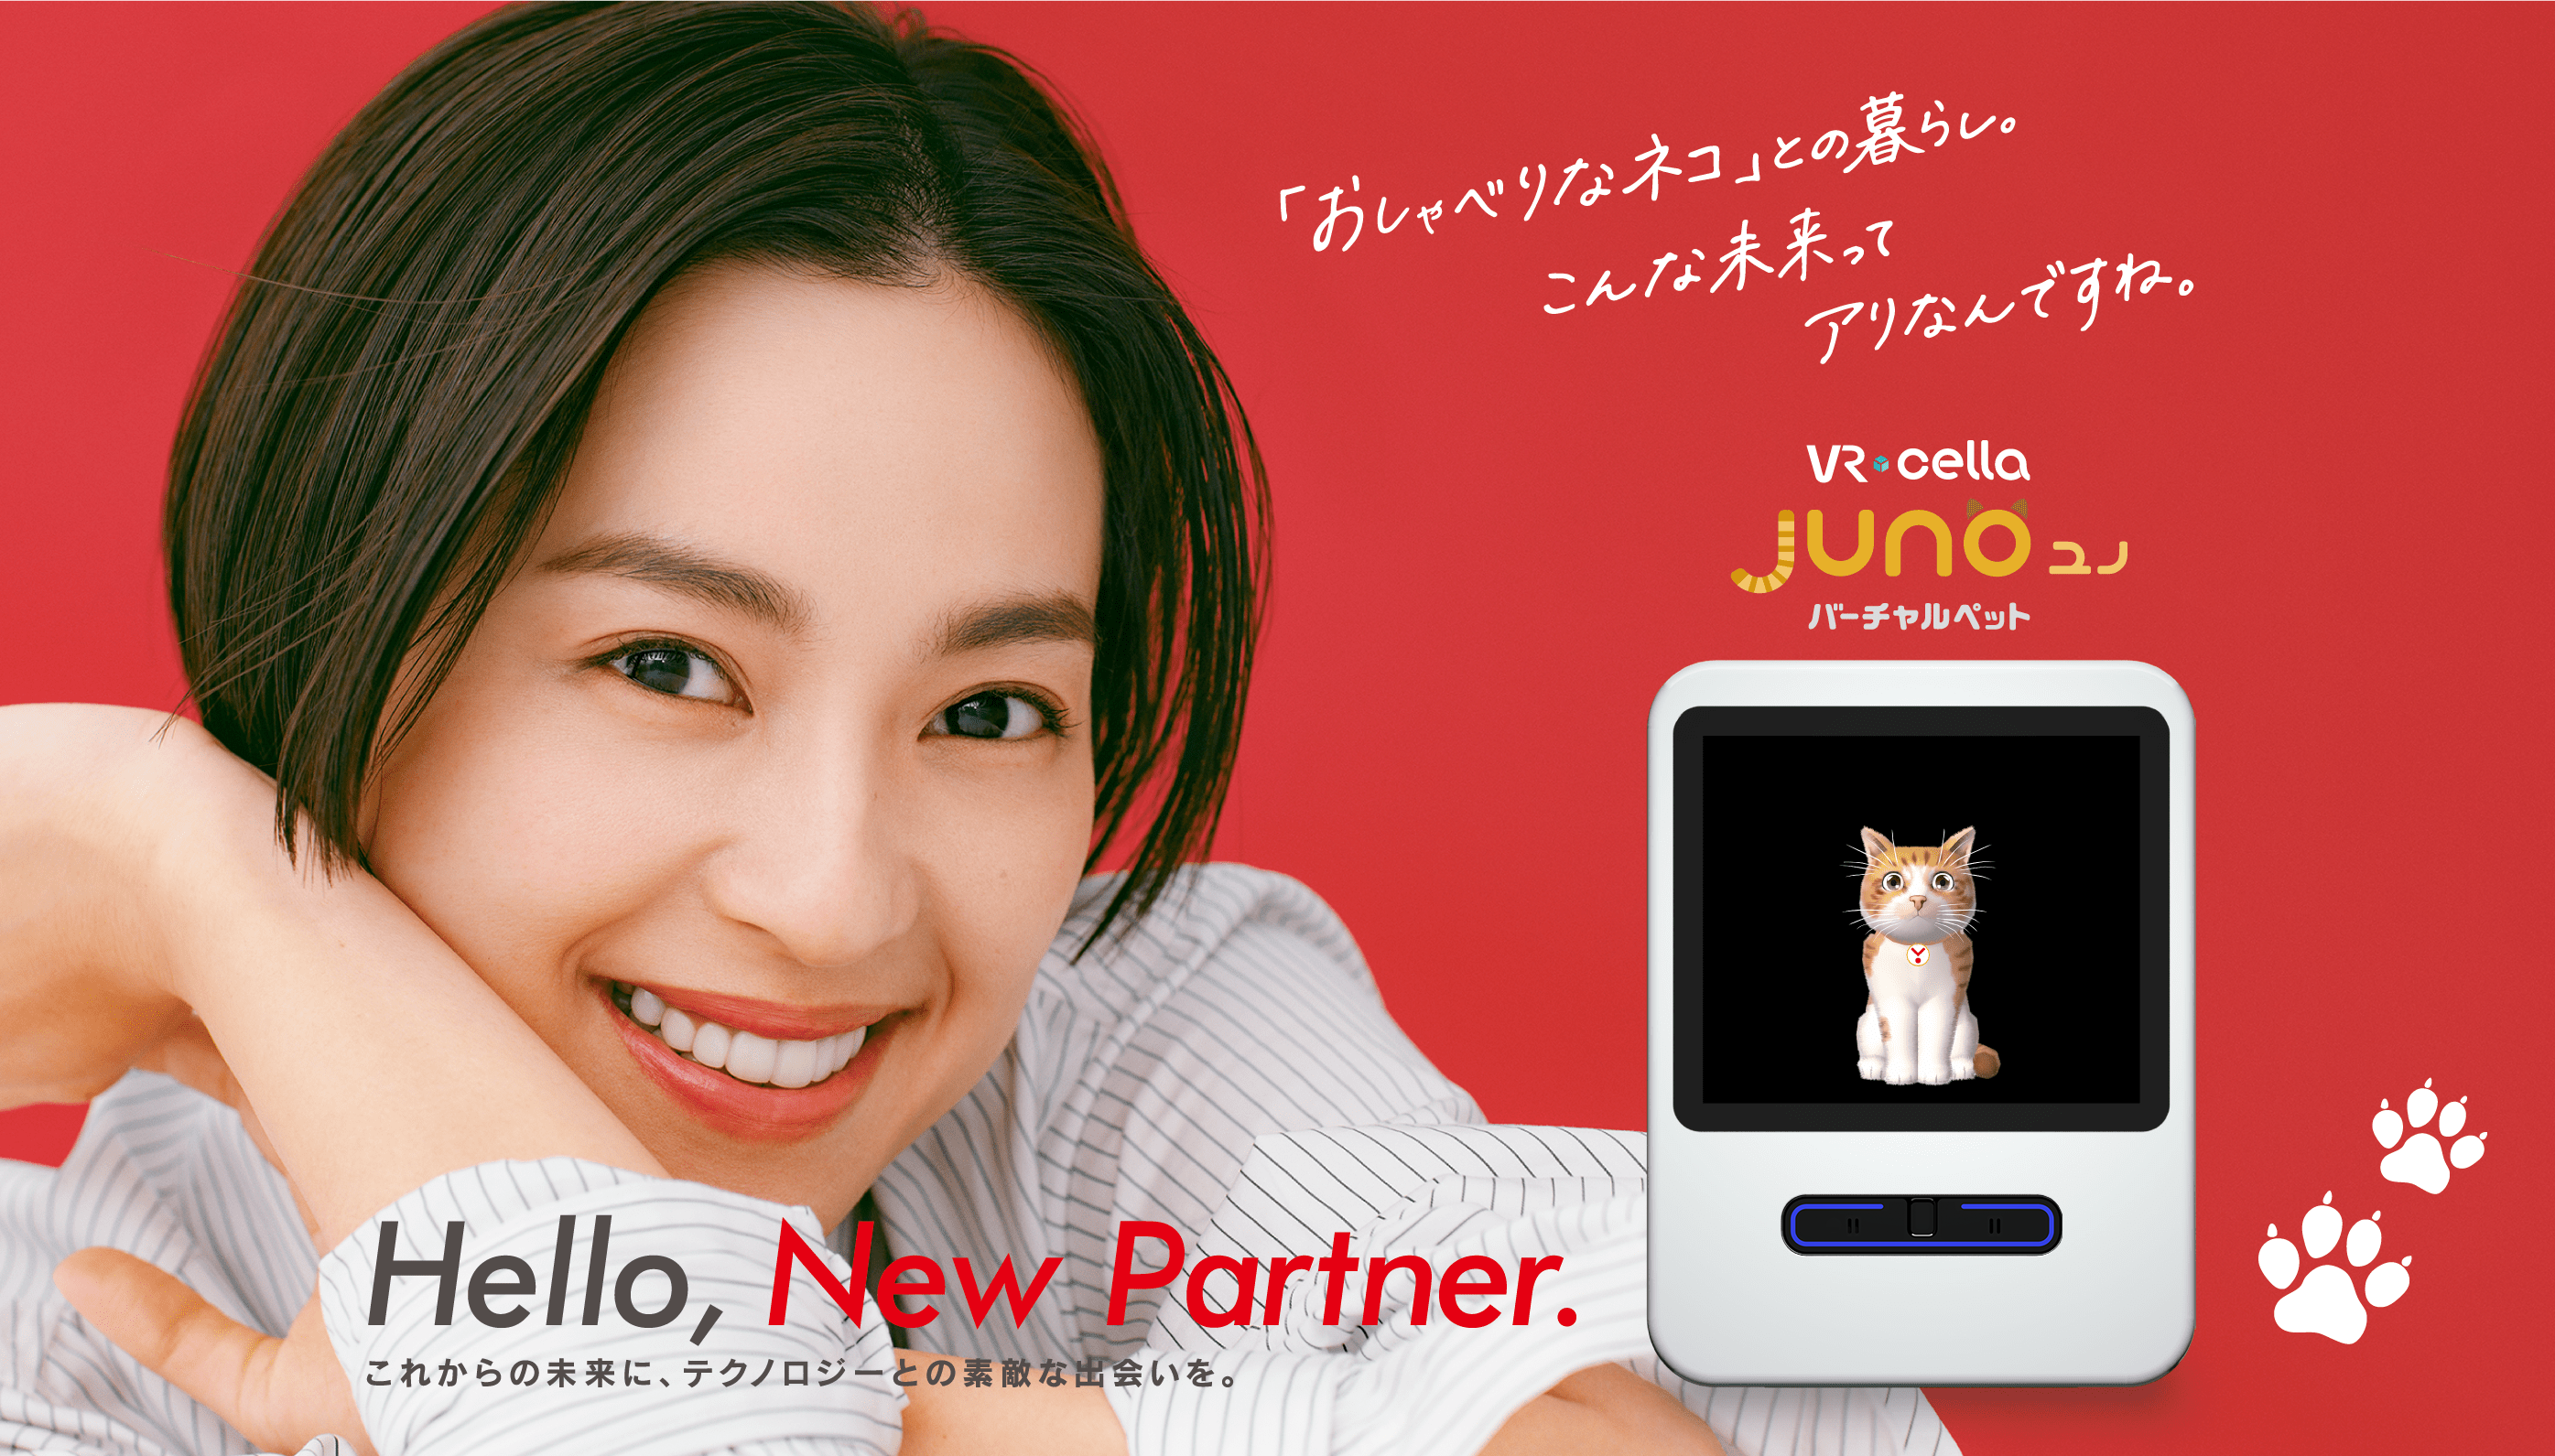 Juno ユノ　「おしゃべりなネコ」との暮らし。こんな未来ってアリなんですね。 Hello,New Partner.